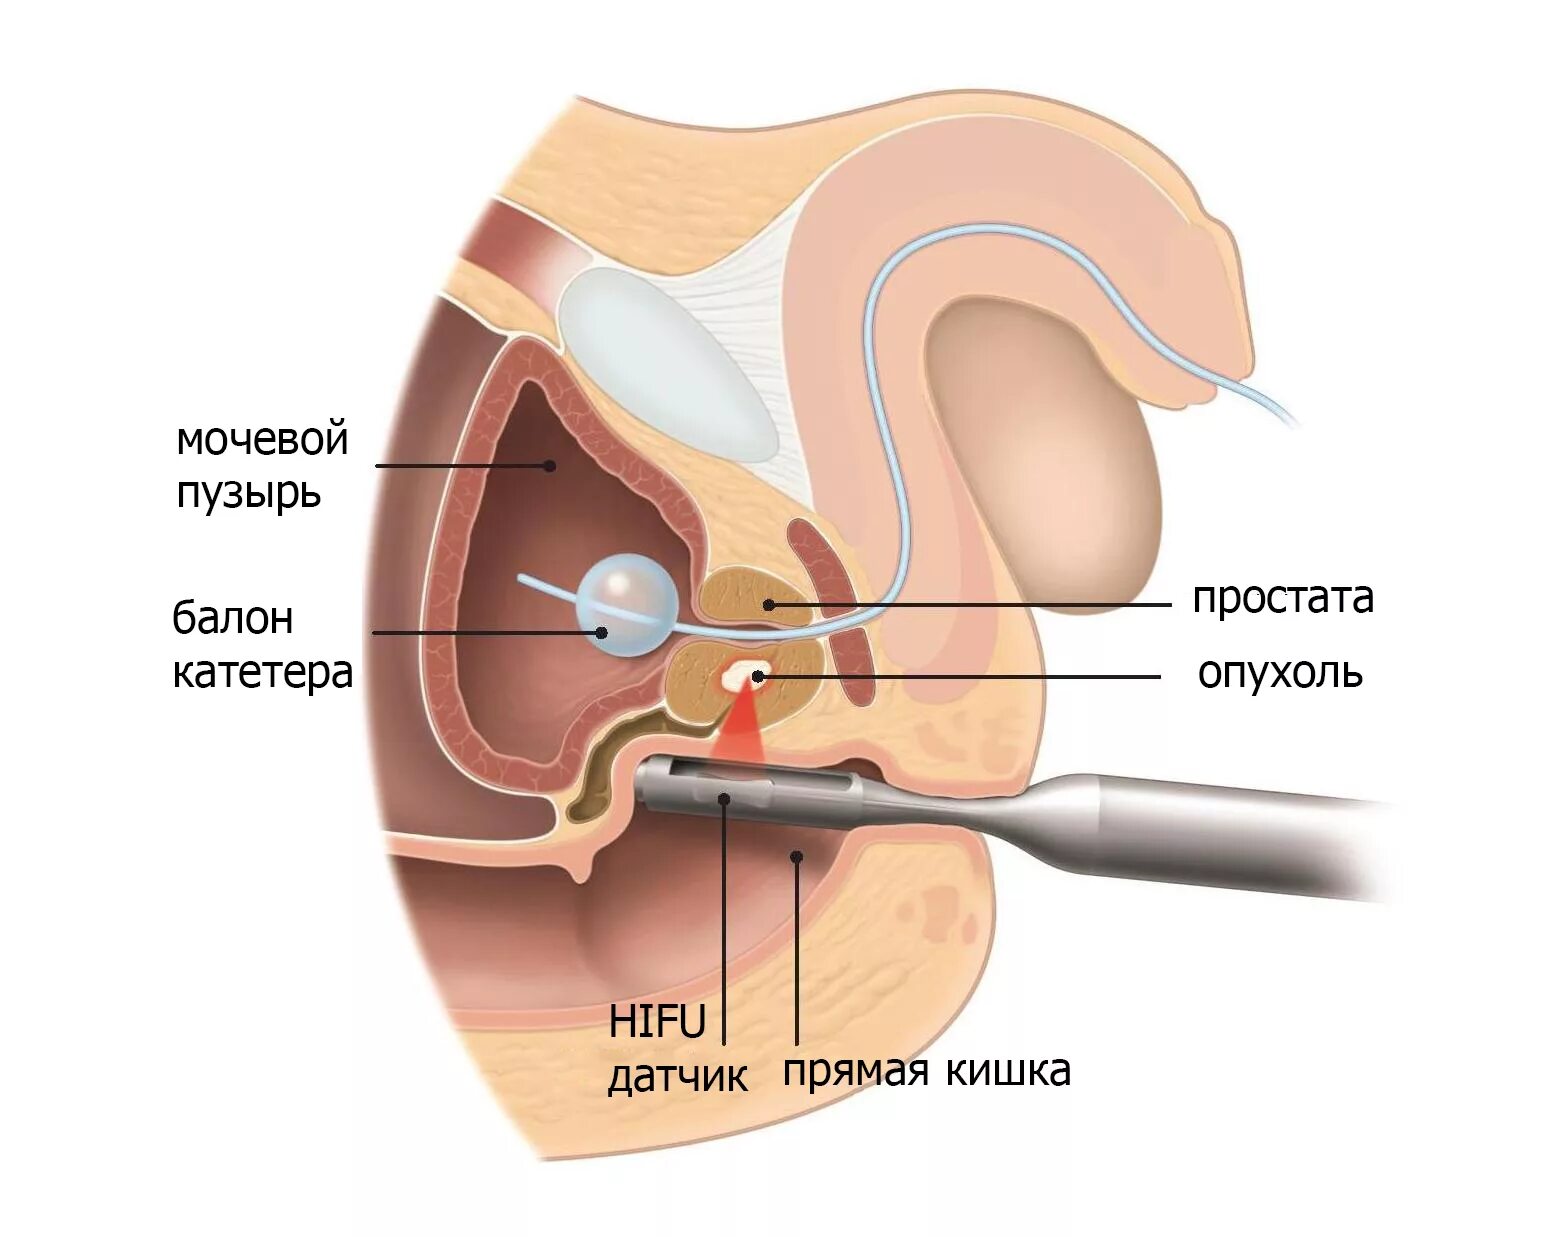 HIFU терапия предстательной железы. Ультразвуковая абляция предстательной железы. Предстательная железа расположение. Расположение предстательной железы в организме мужчины. Простата это предстательная